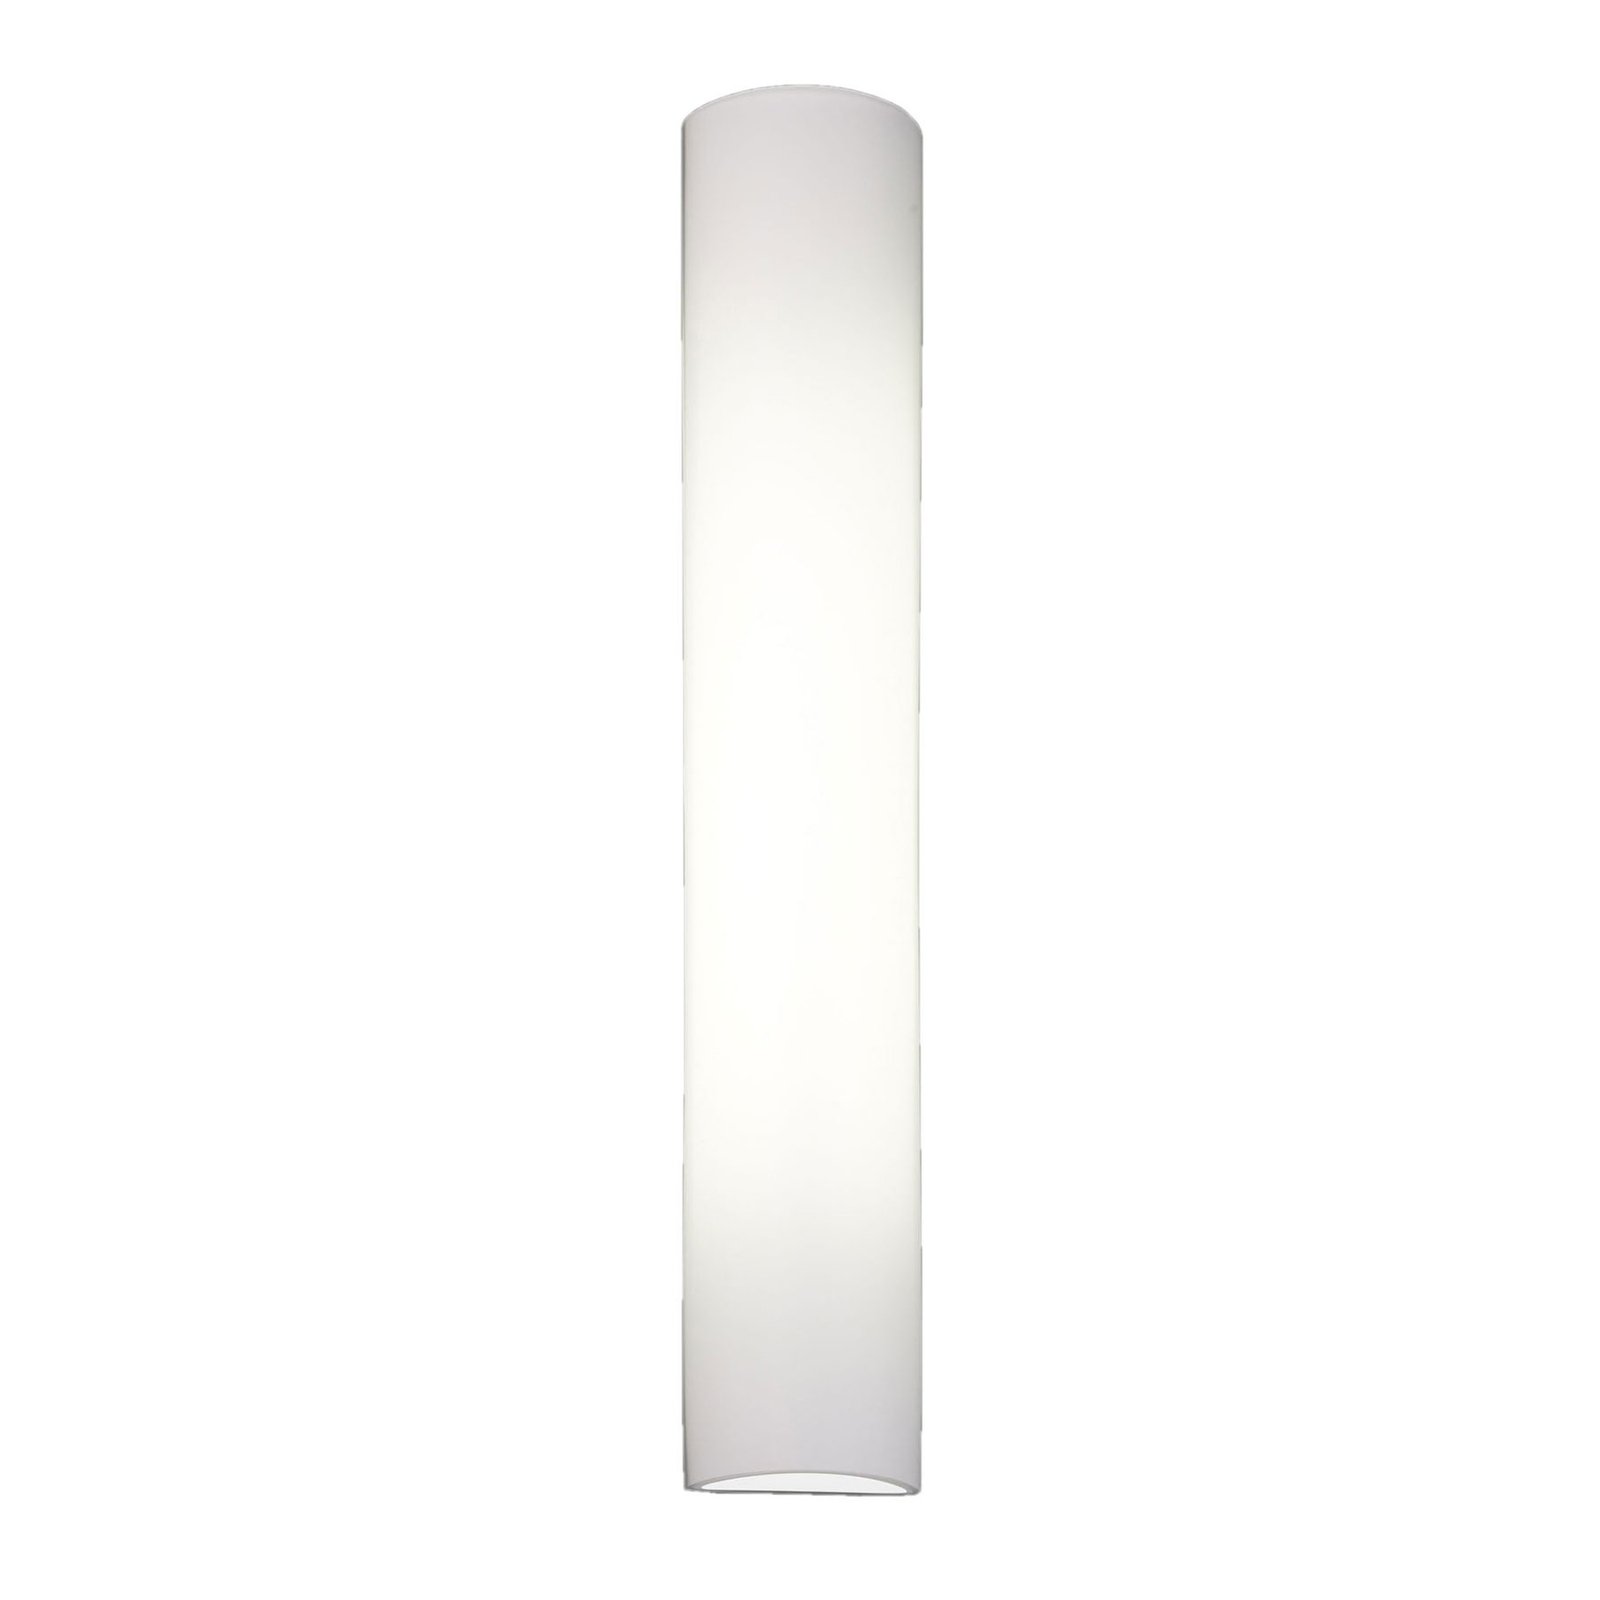 BANKAMP Cromo LED wandlamp van glas, hoogte 40cm